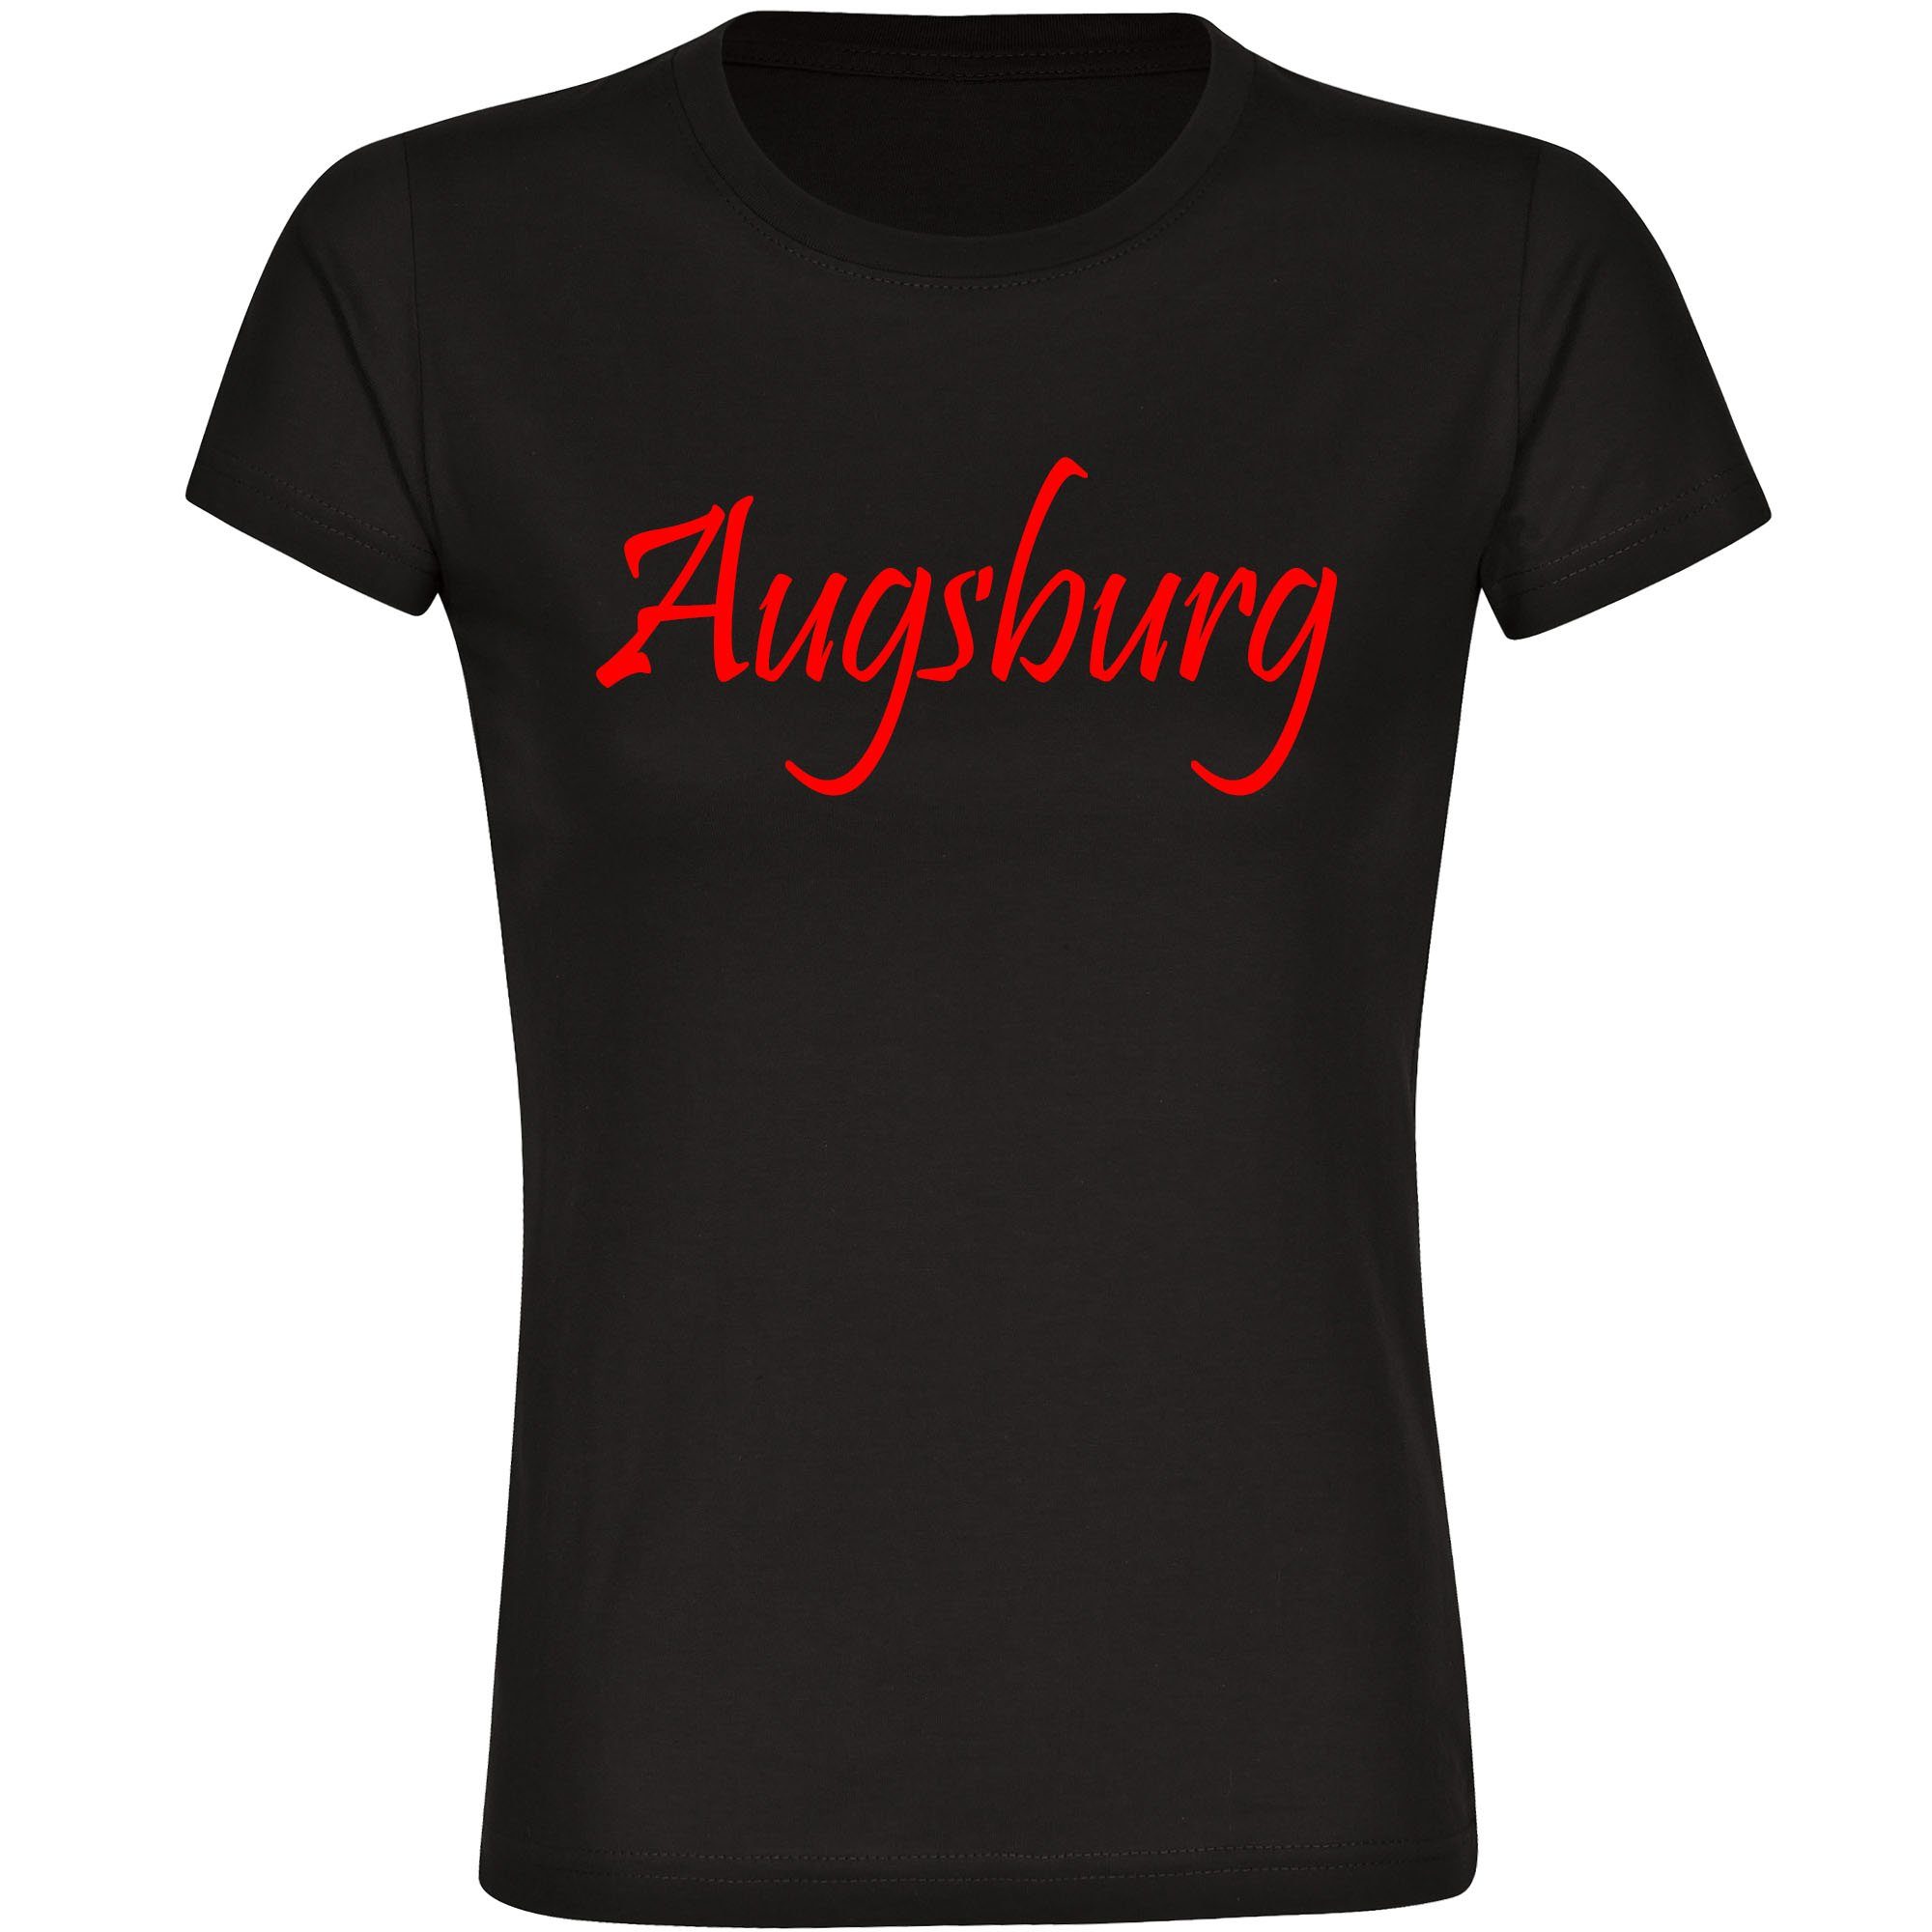 multifanshop T-Shirt Damen Augsburg - Schriftzug - Frauen